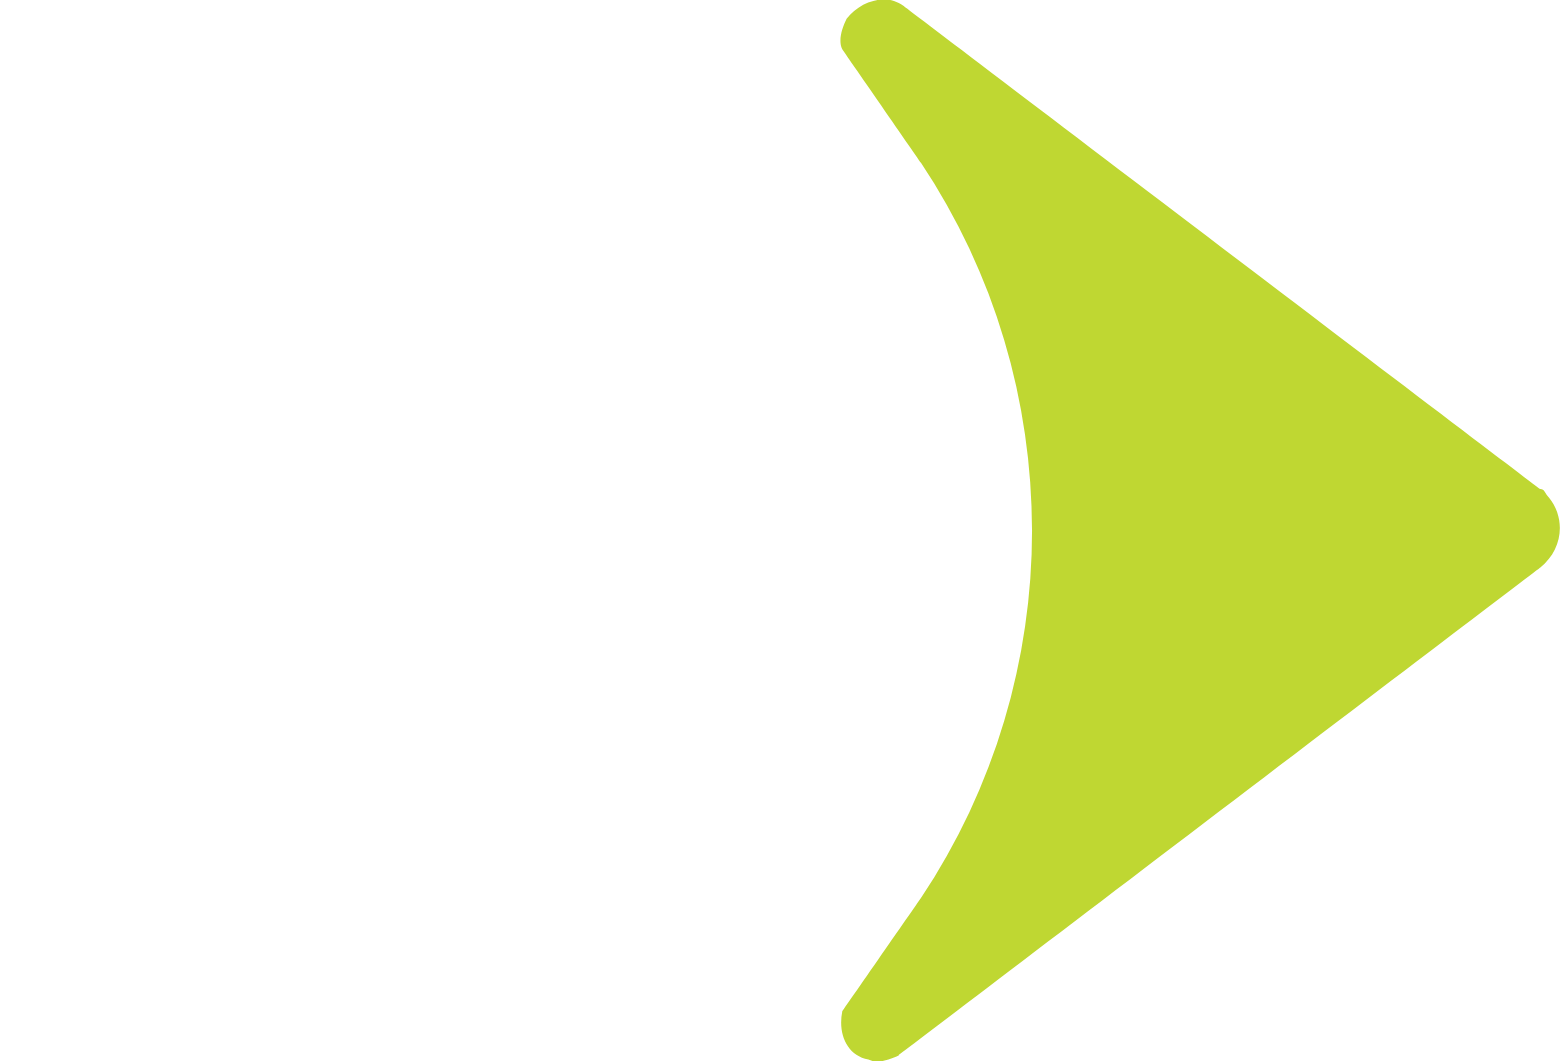 Globant logo for dark backgrounds (transparent PNG)